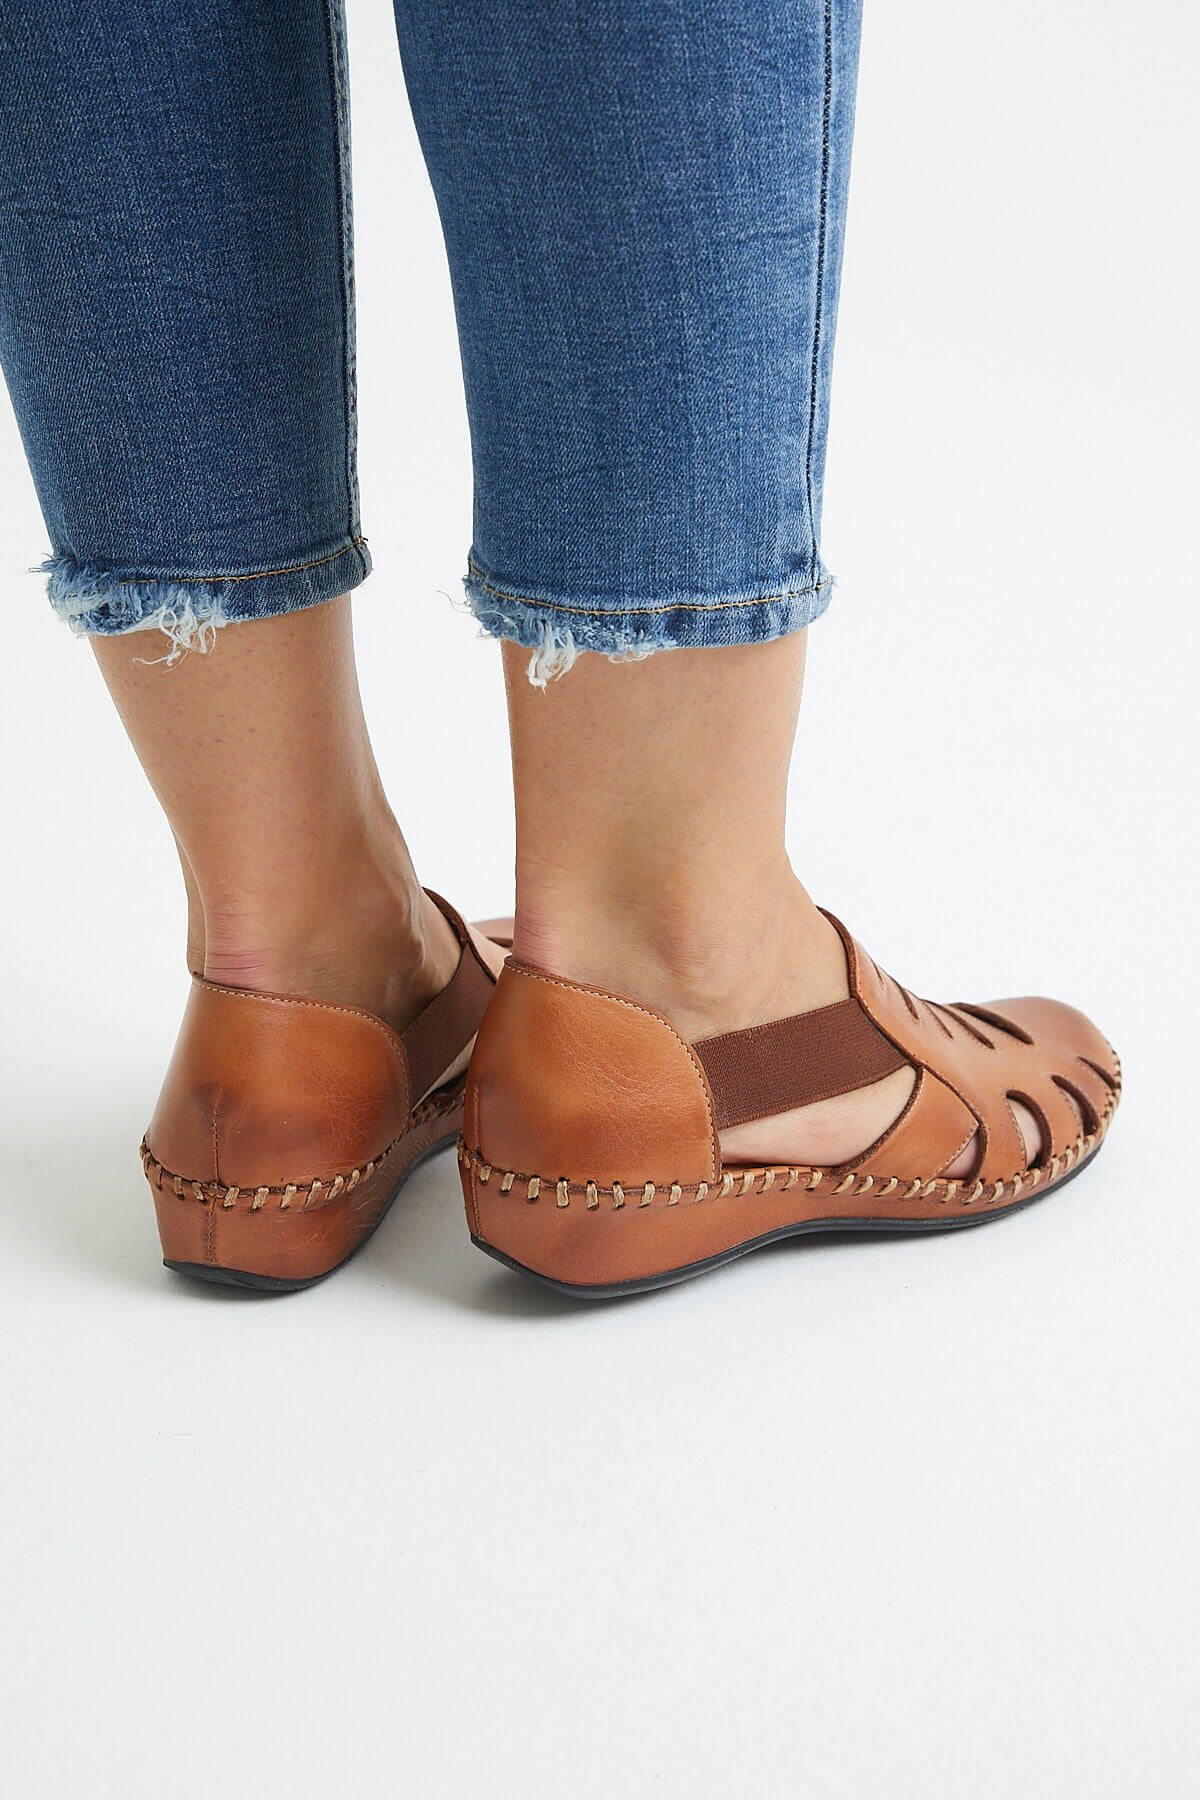 Kadın Comfort Deri Sandalet Taba 18791395 - Thumbnail